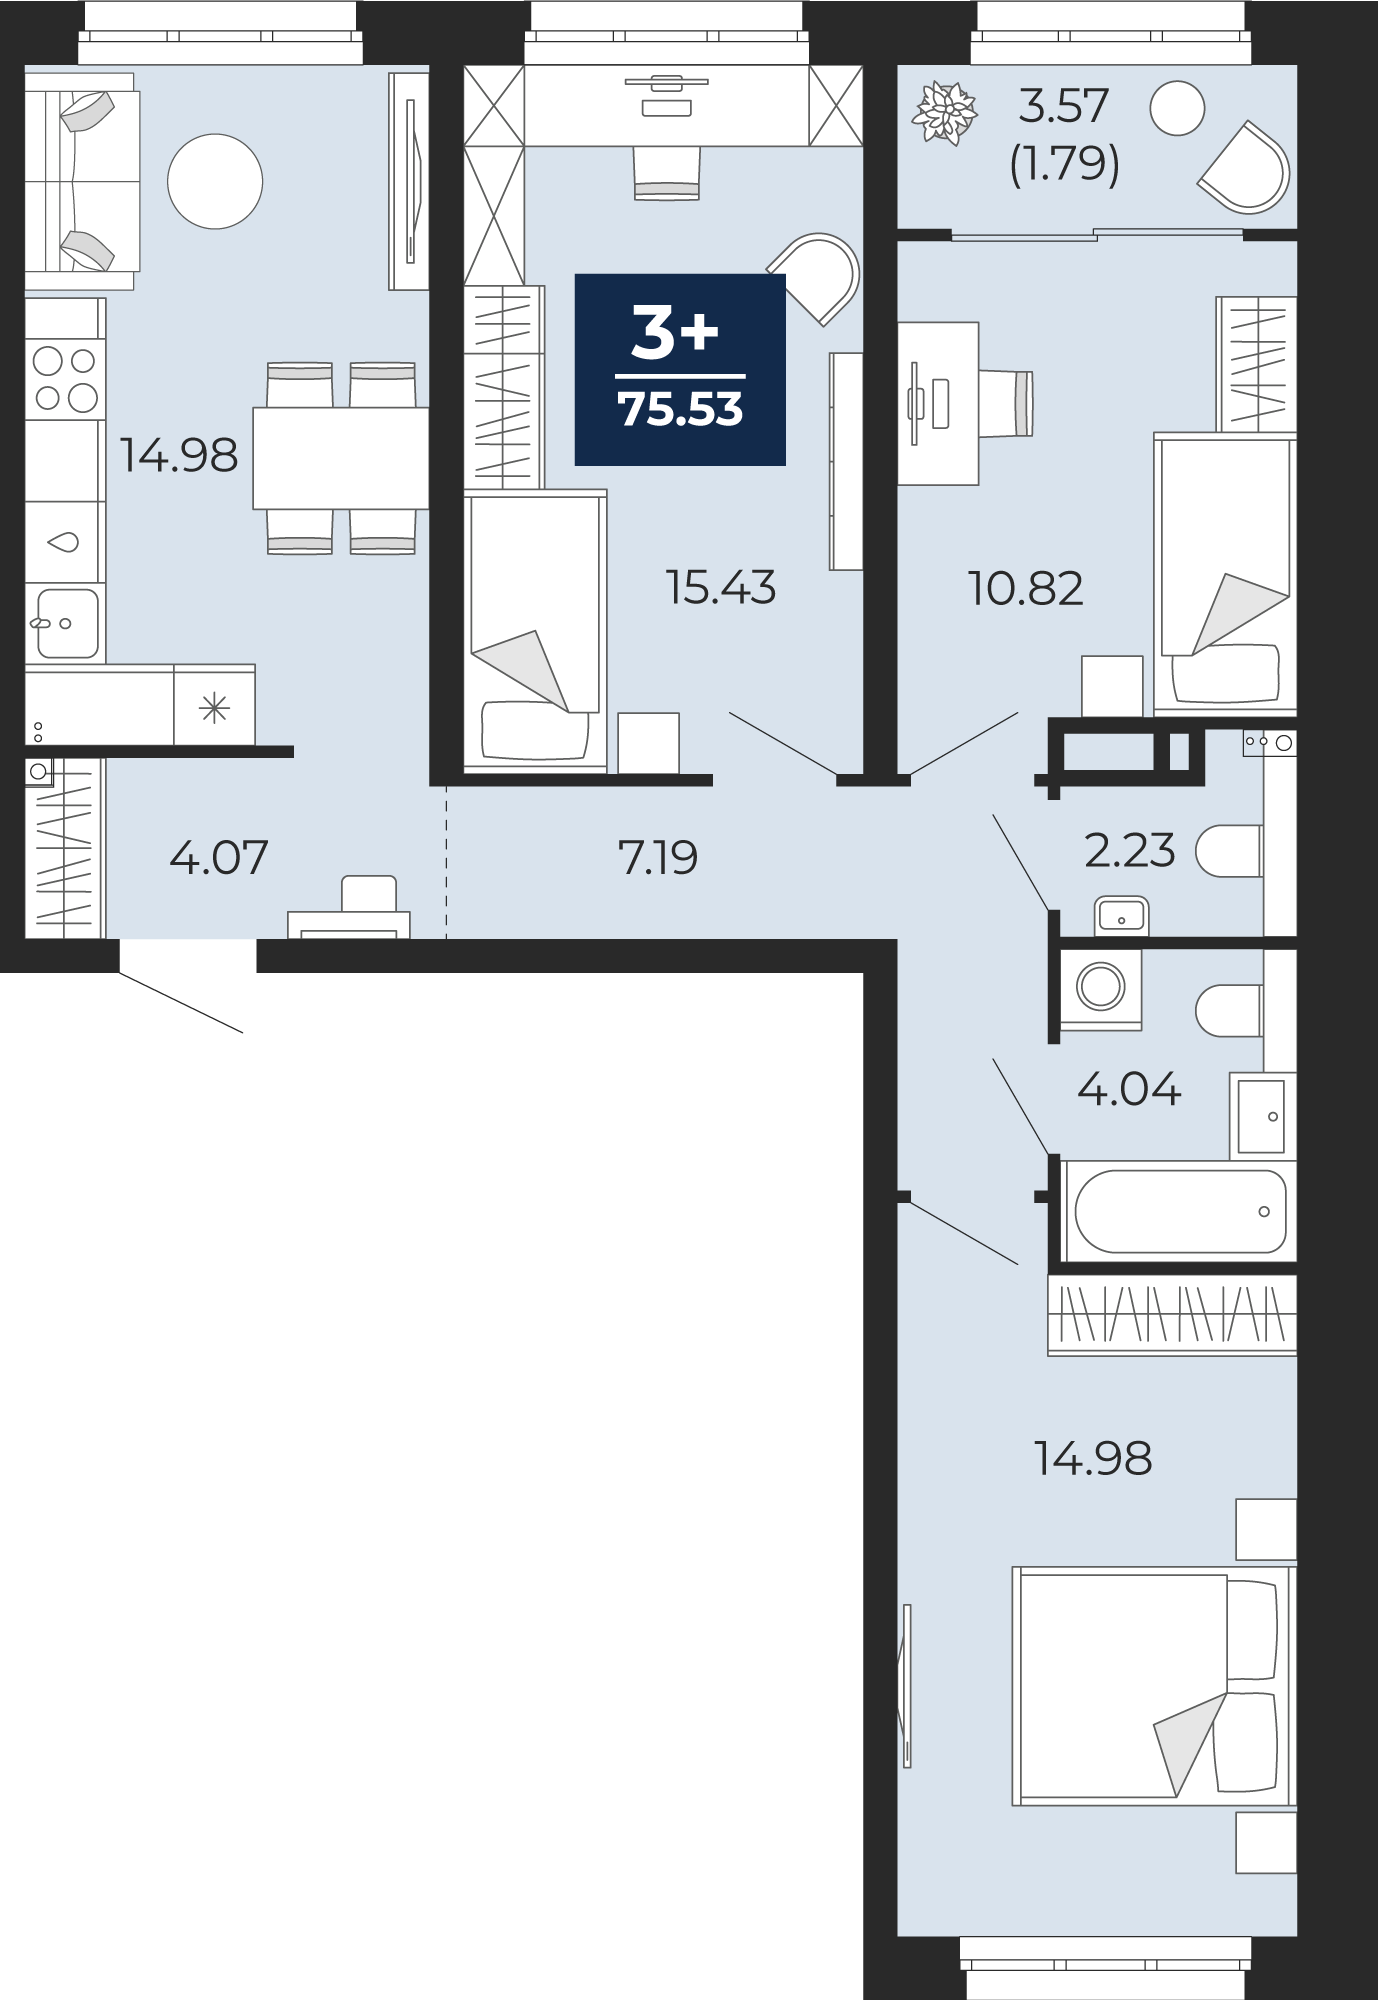 Квартира № 58, 3-комнатная, 75.53 кв. м, 13 этаж